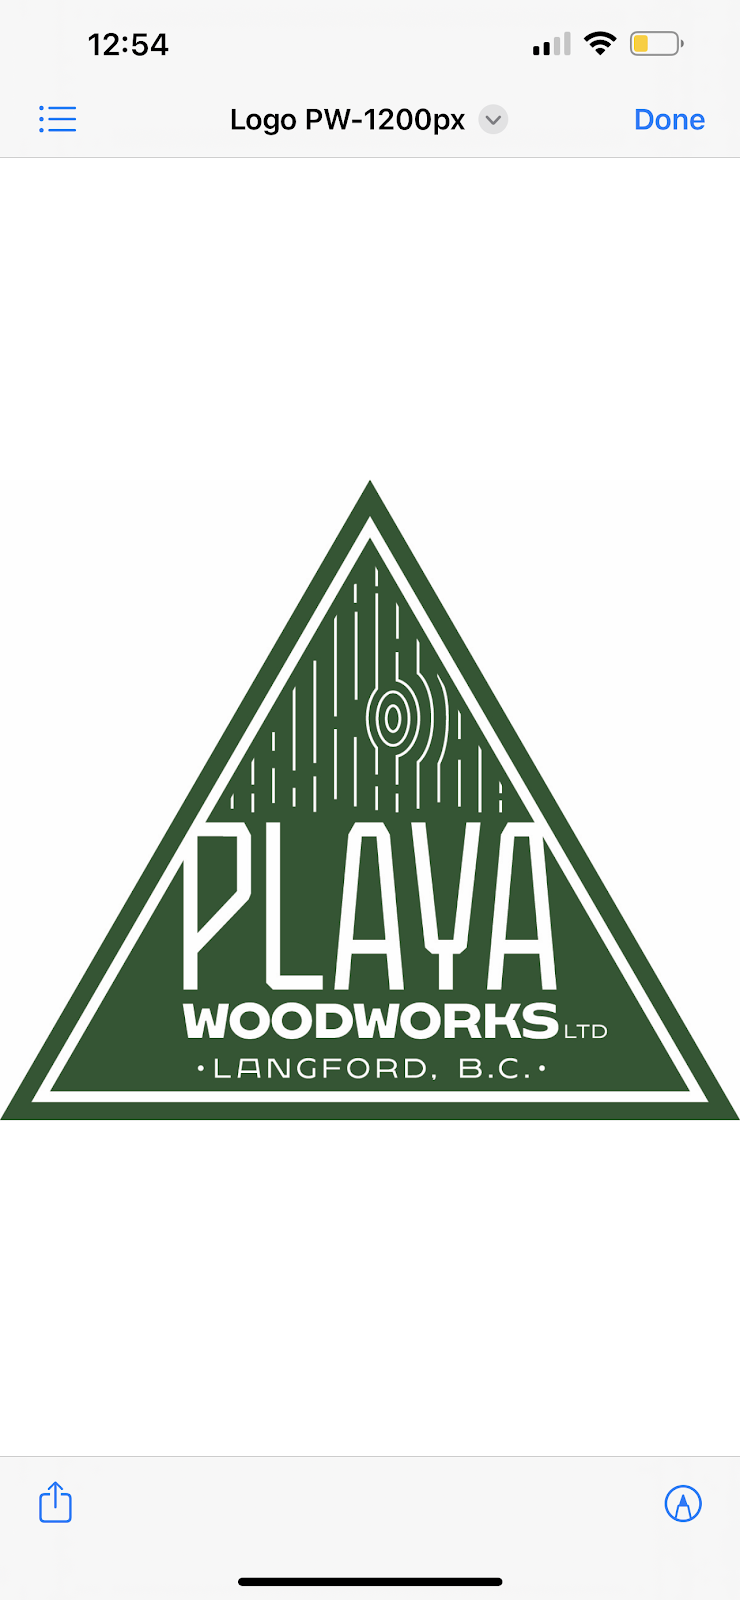 Playa Woodworks Ltd. | 4342 W Shr Pkwy, Victoria, BC V9B 5Z1, Canada | Phone: (250) 885-4427